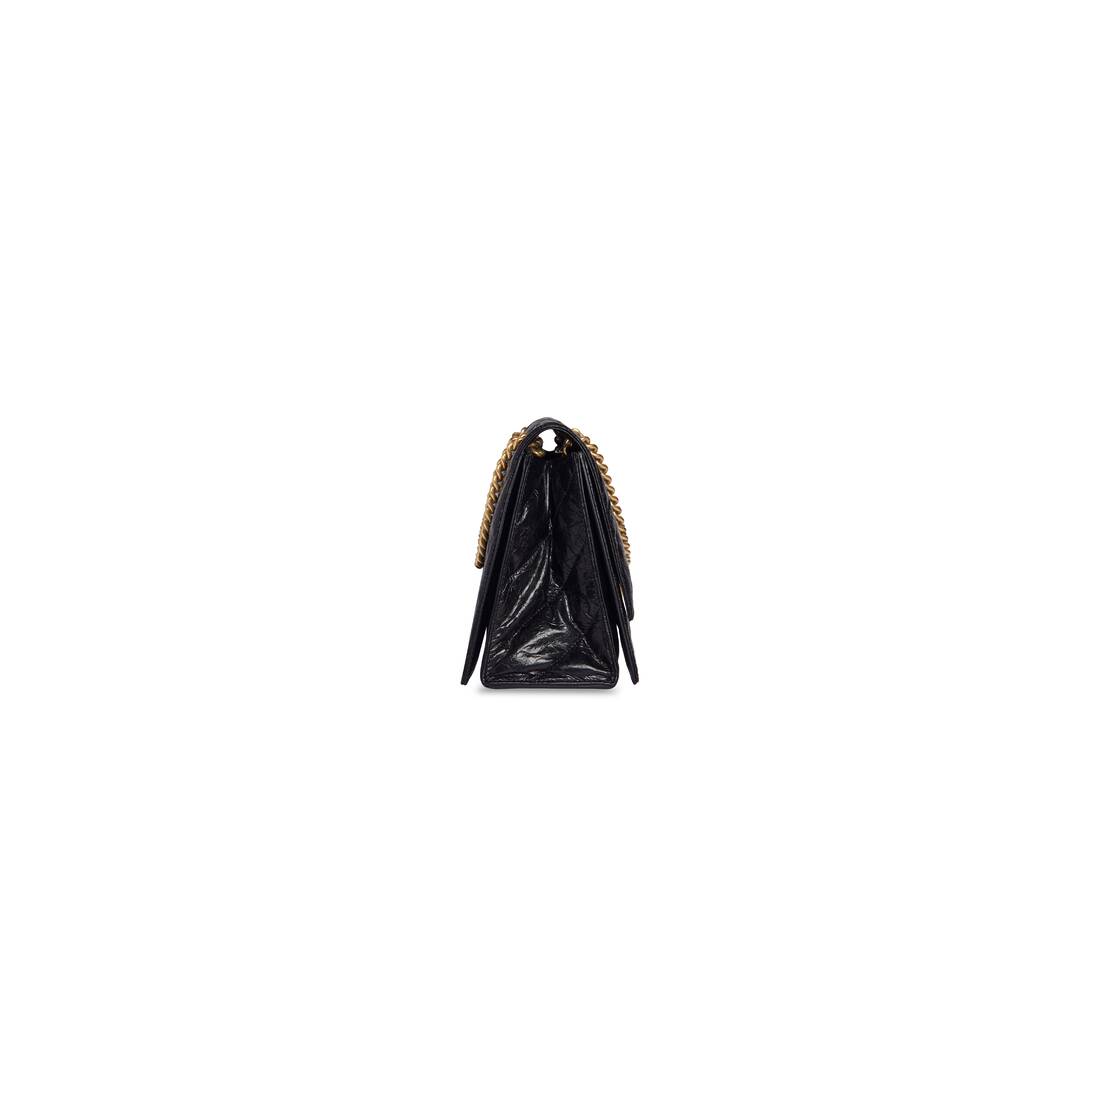 Balenciaga Women's Crush Medium Chain Bag - Black